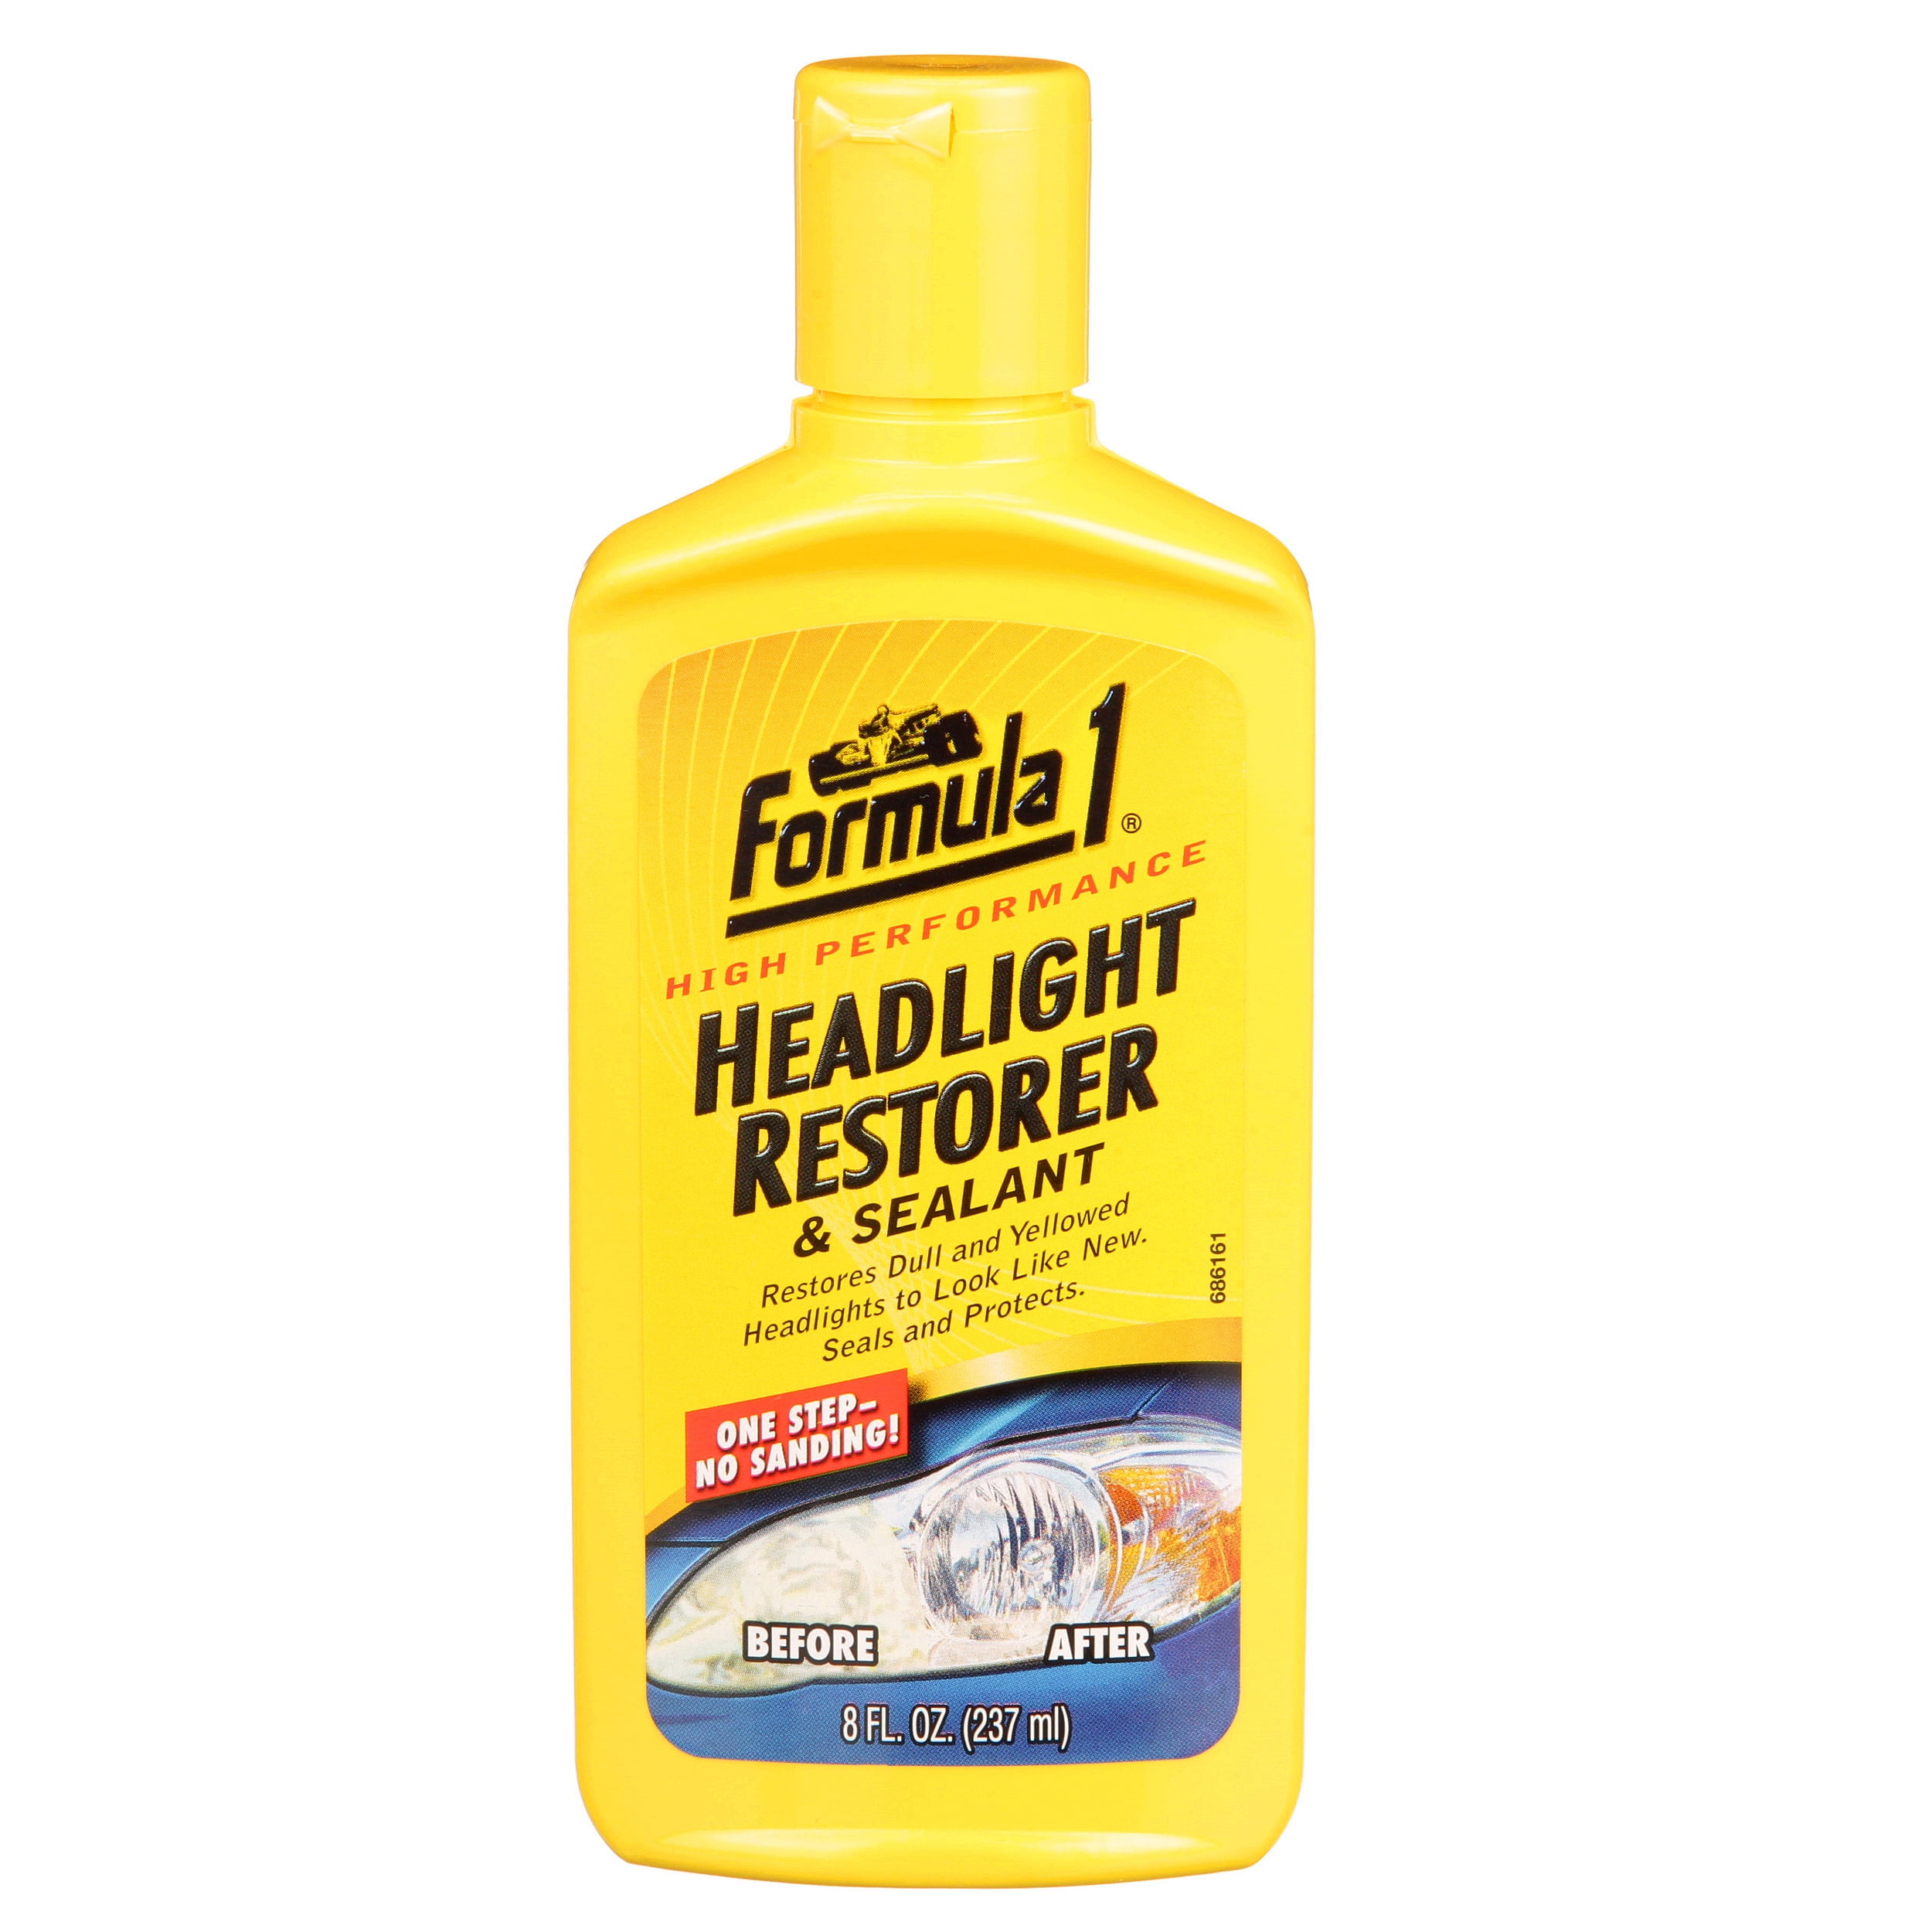 Stinger Chemical Headlight Restoration Sealer